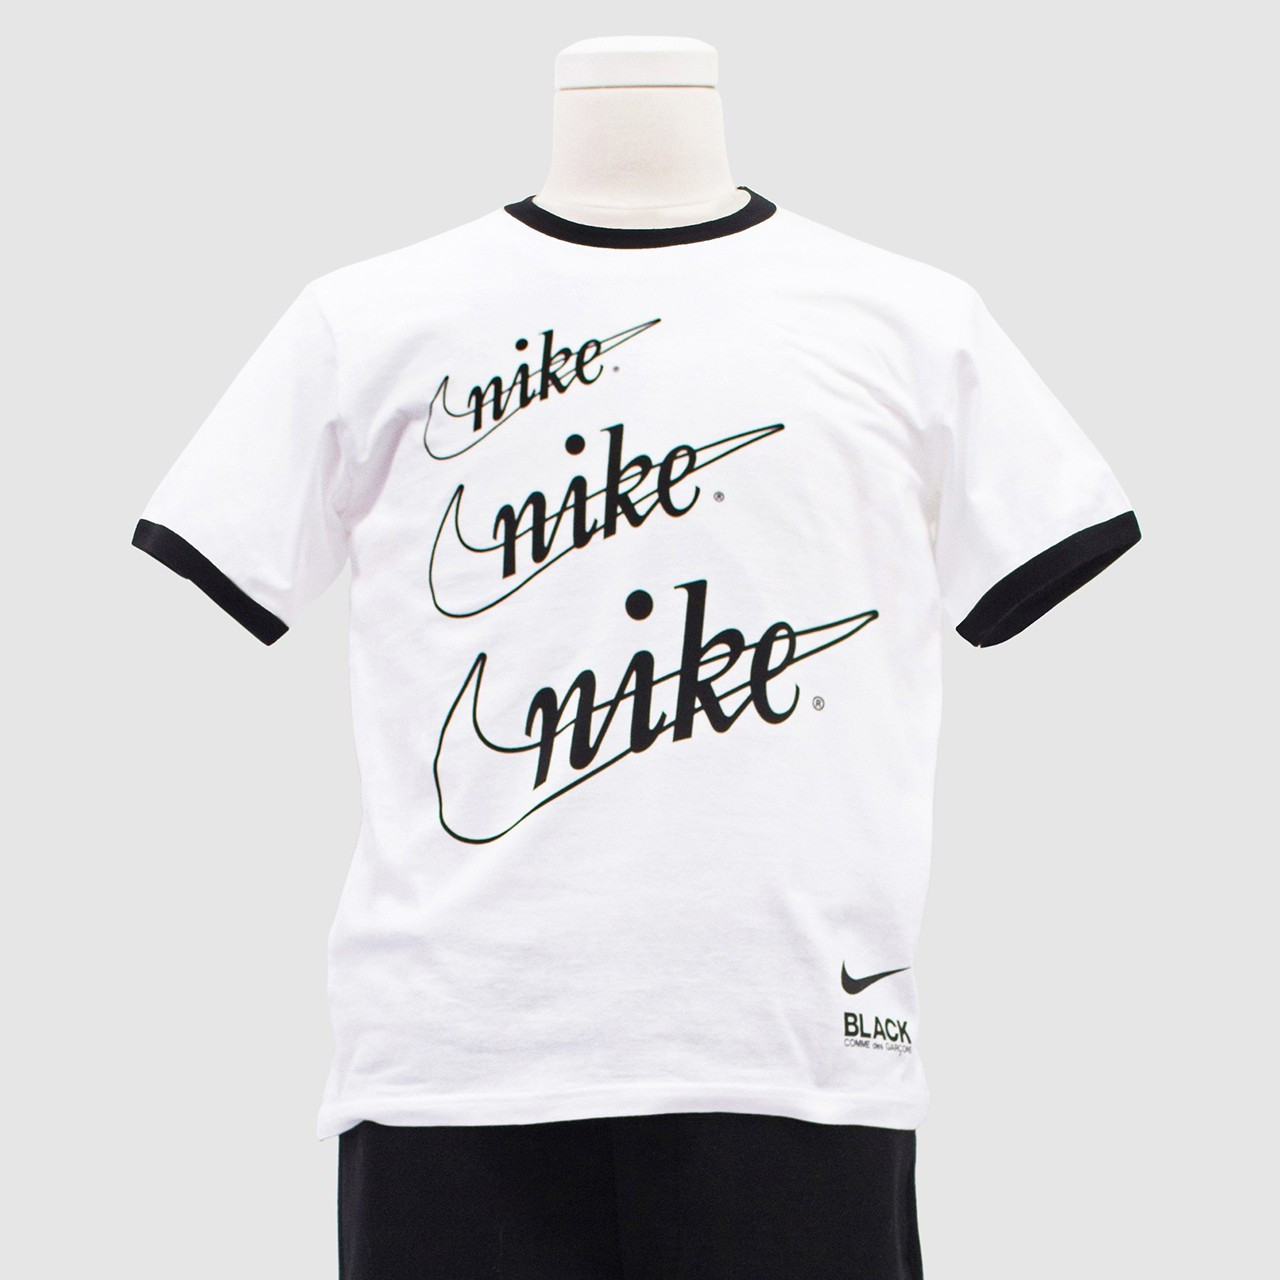 BLACK COMME des GARÇONS x Nike T-shirt